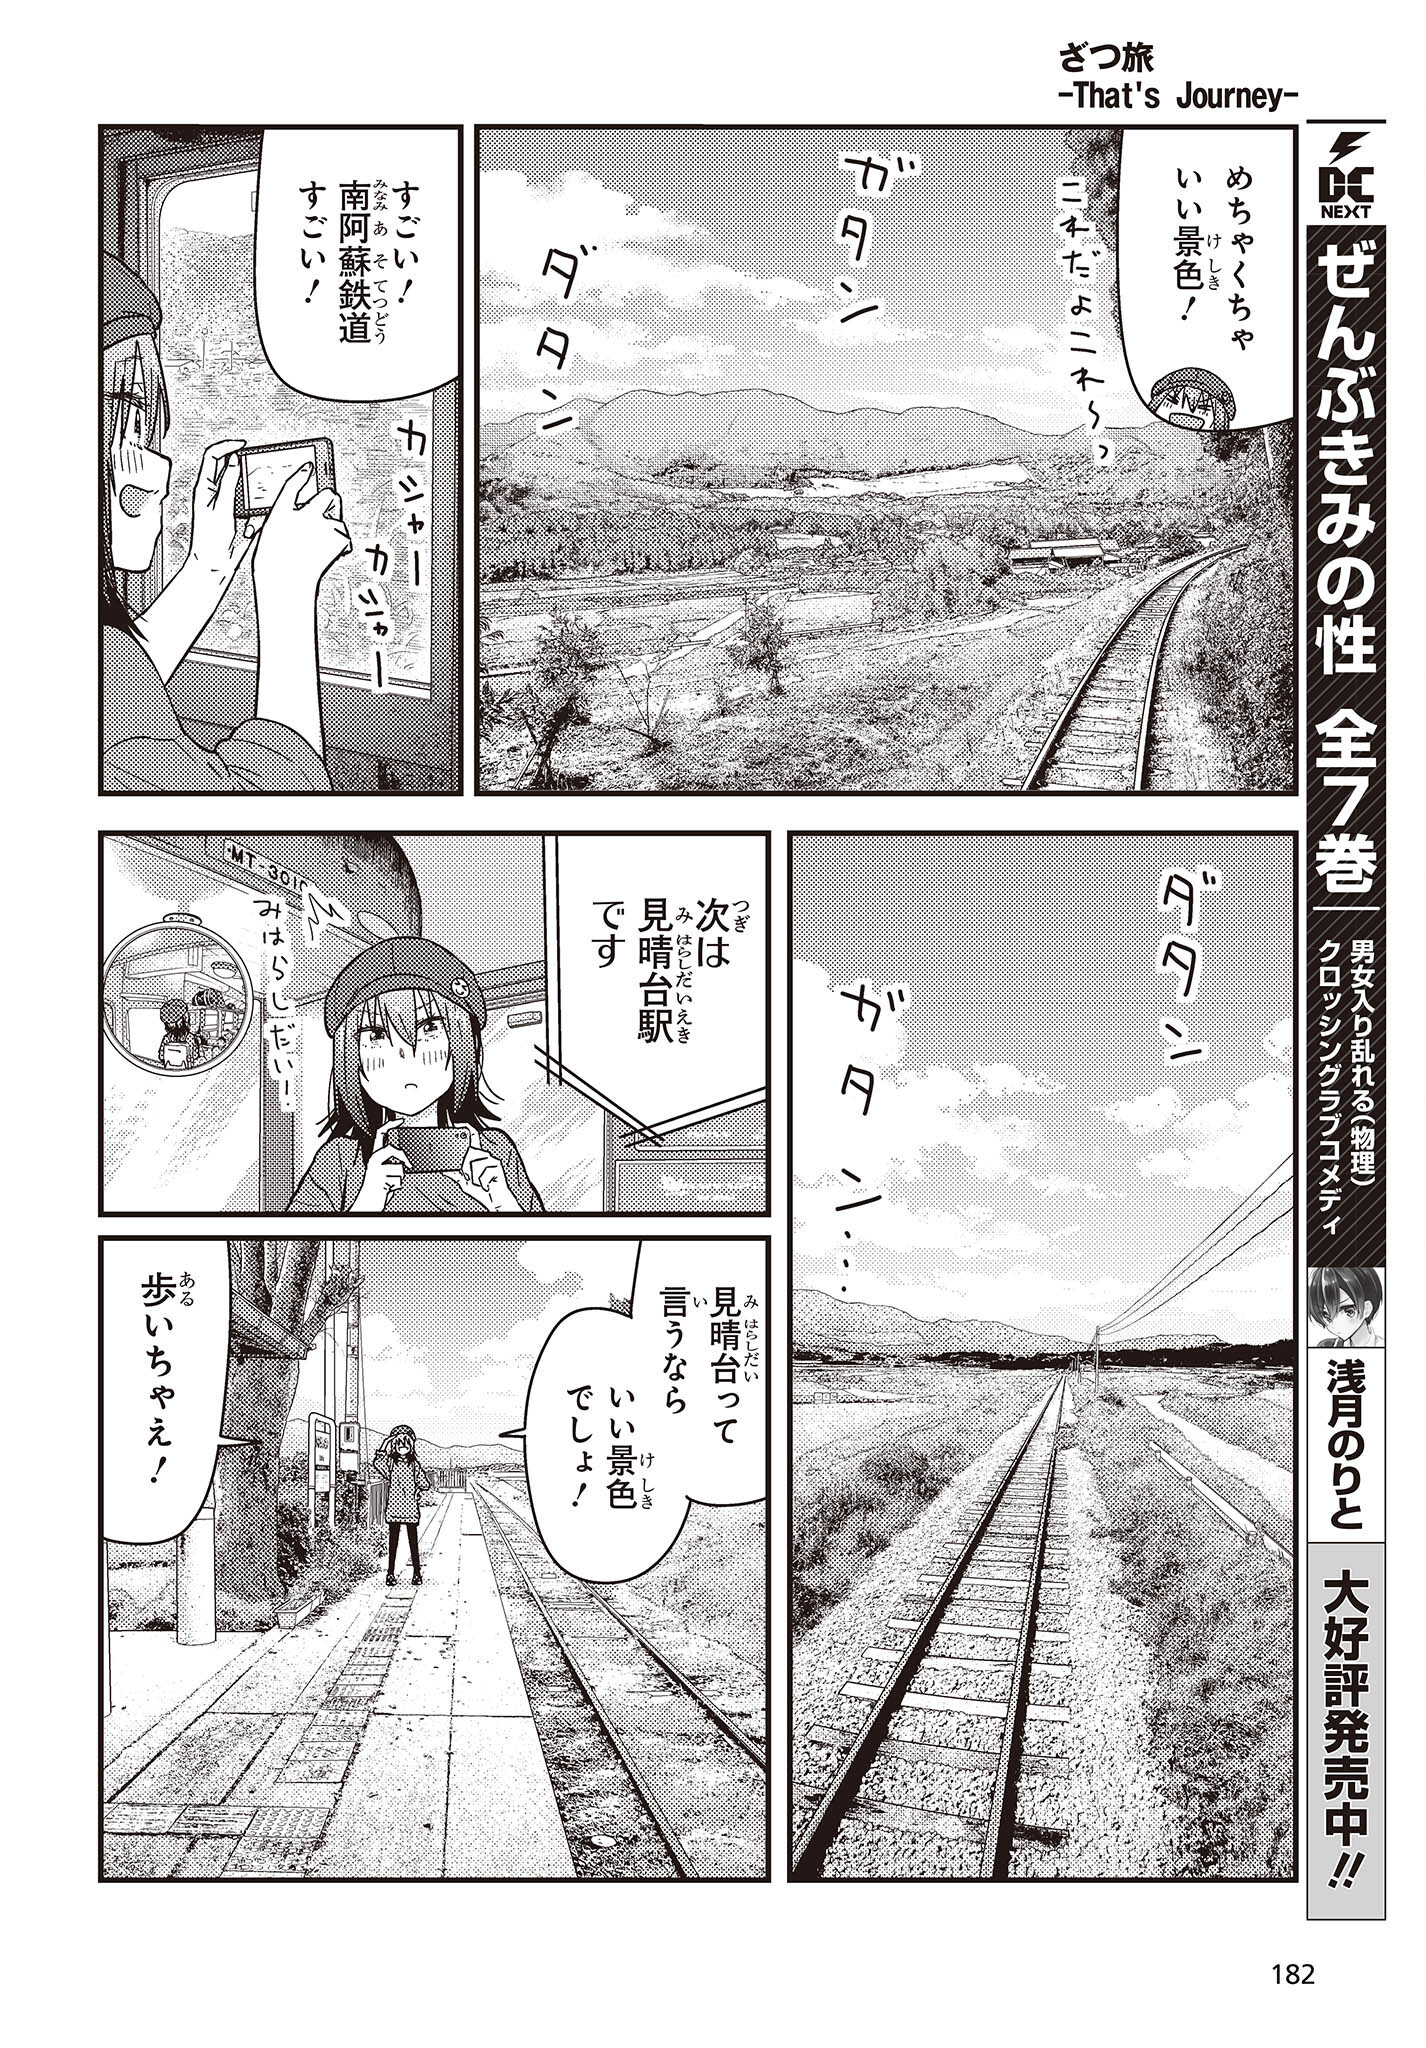 ざつ旅-That’s Journey- 第34話 - Page 22